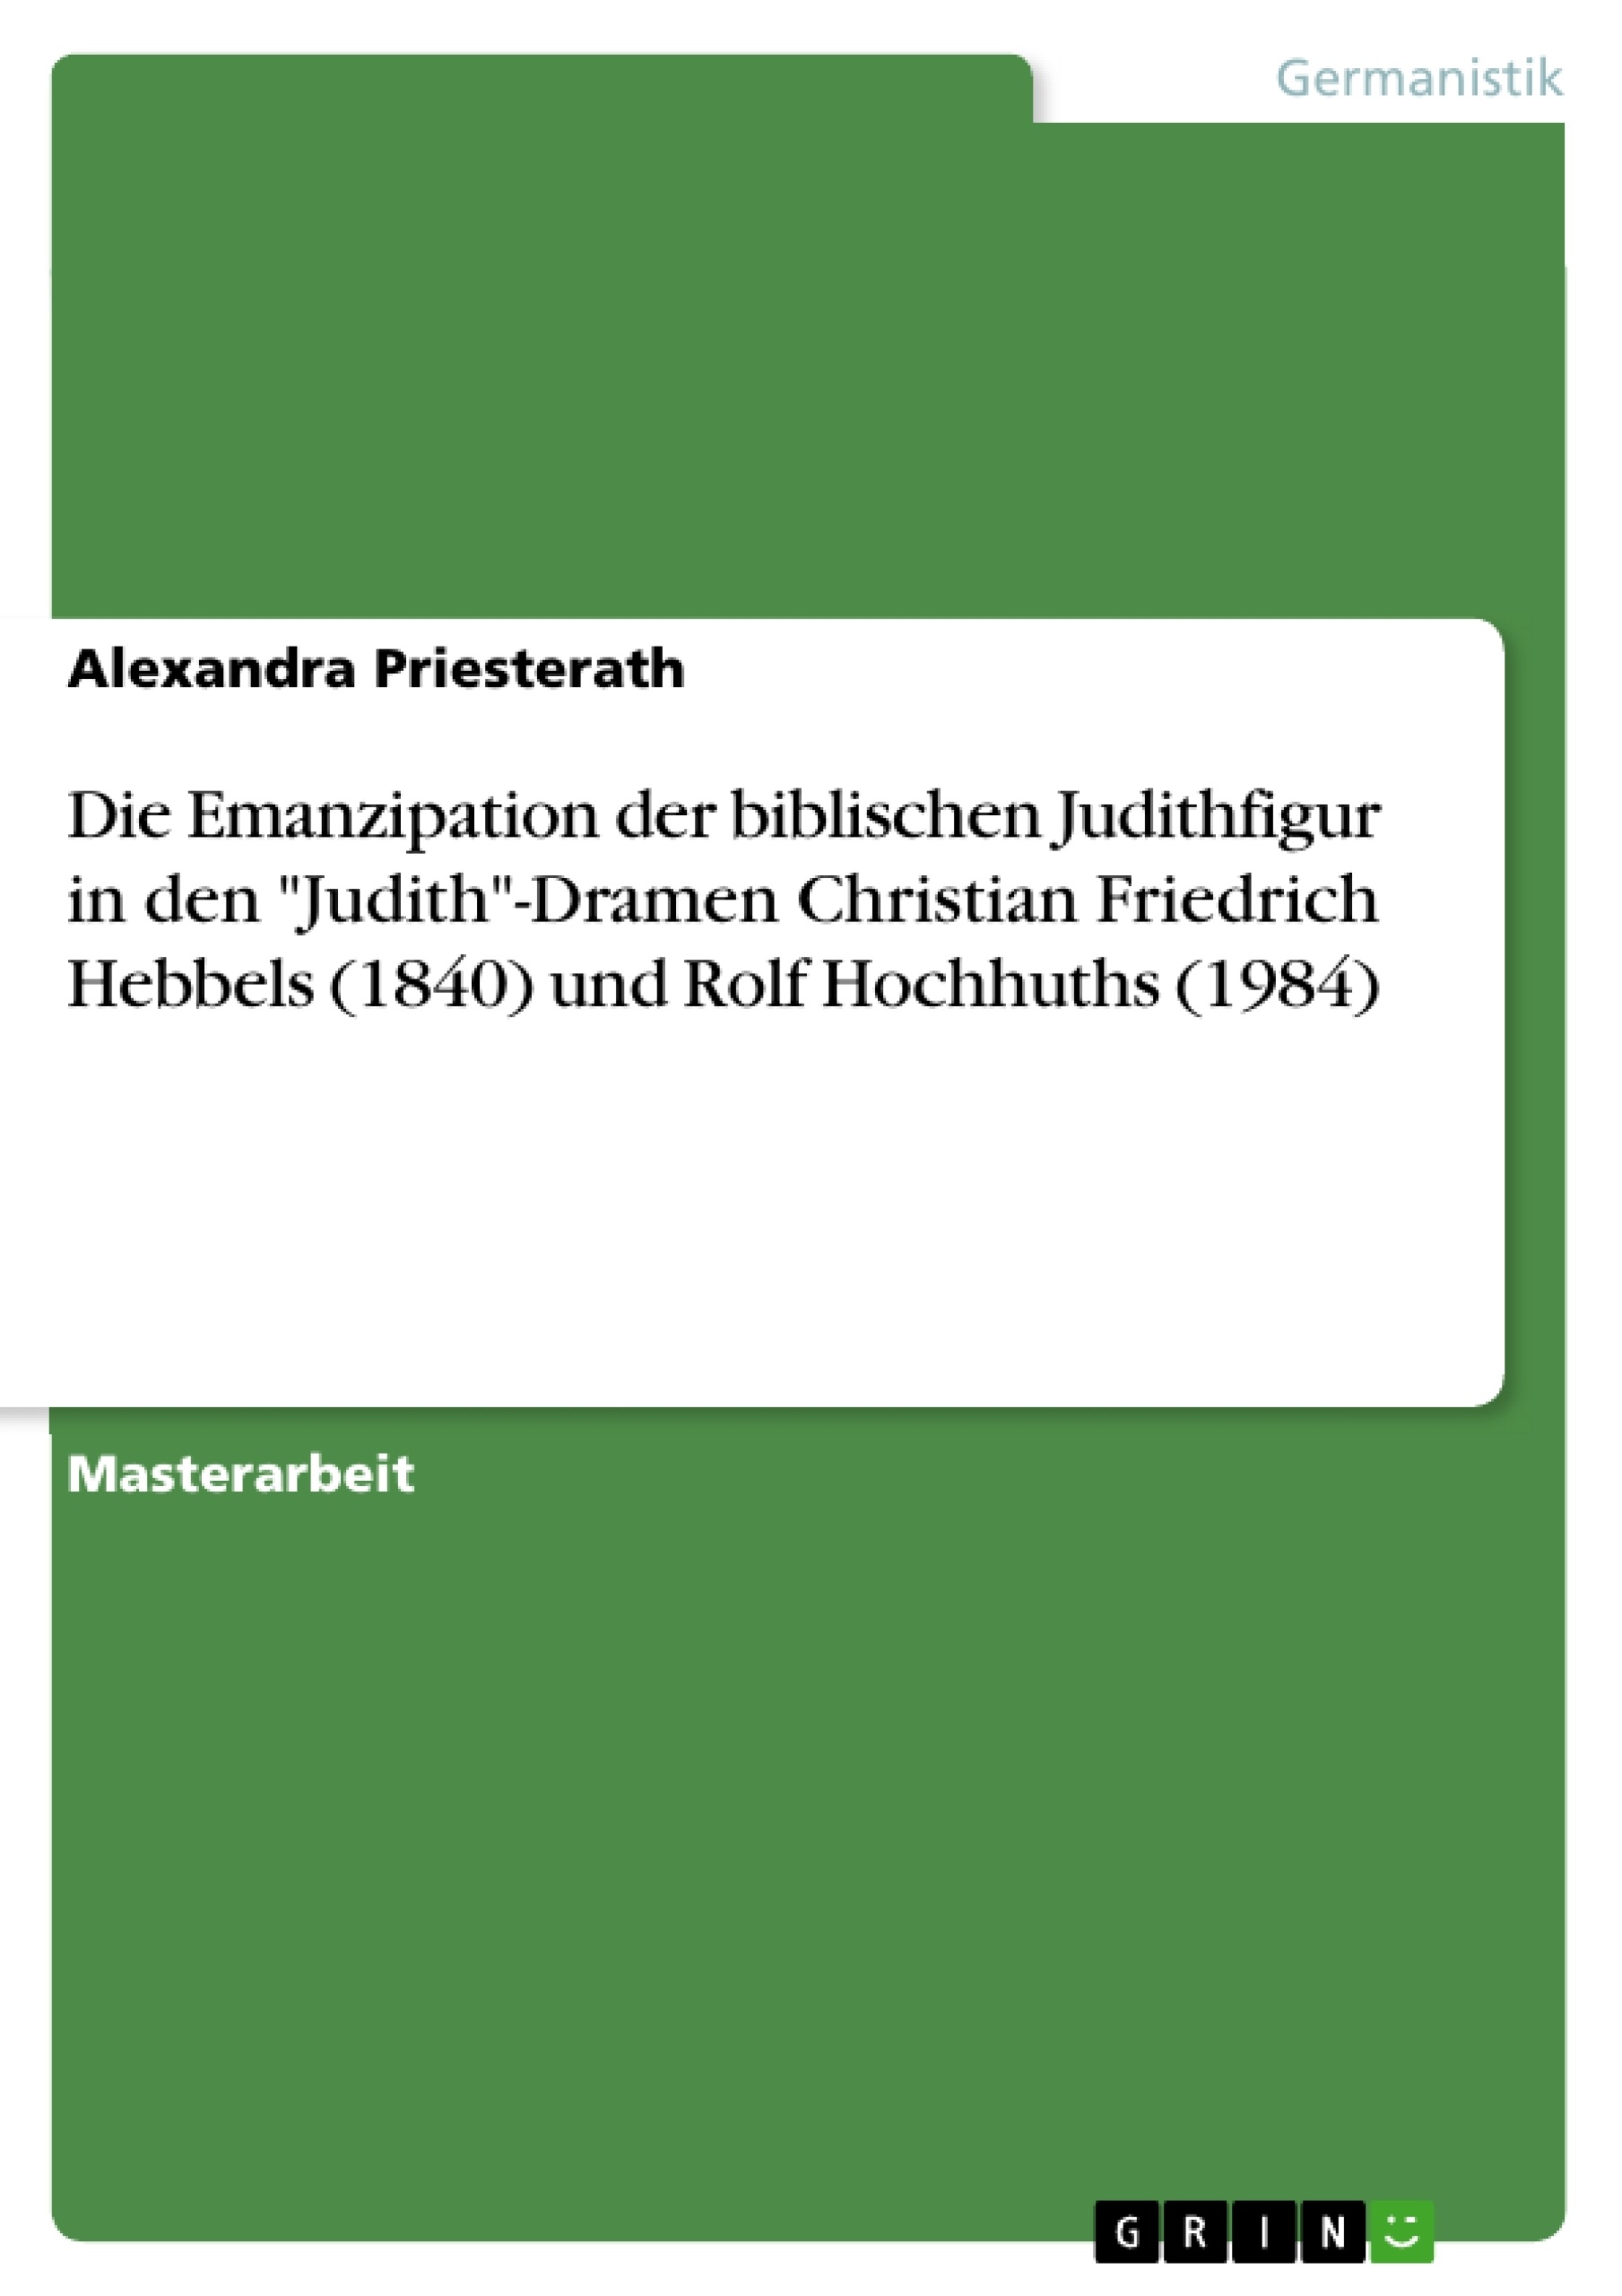 Title: Die Emanzipation der biblischen Judithfigur in den "Judith"-Dramen Christian Friedrich Hebbels (1840) und Rolf Hochhuths (1984)